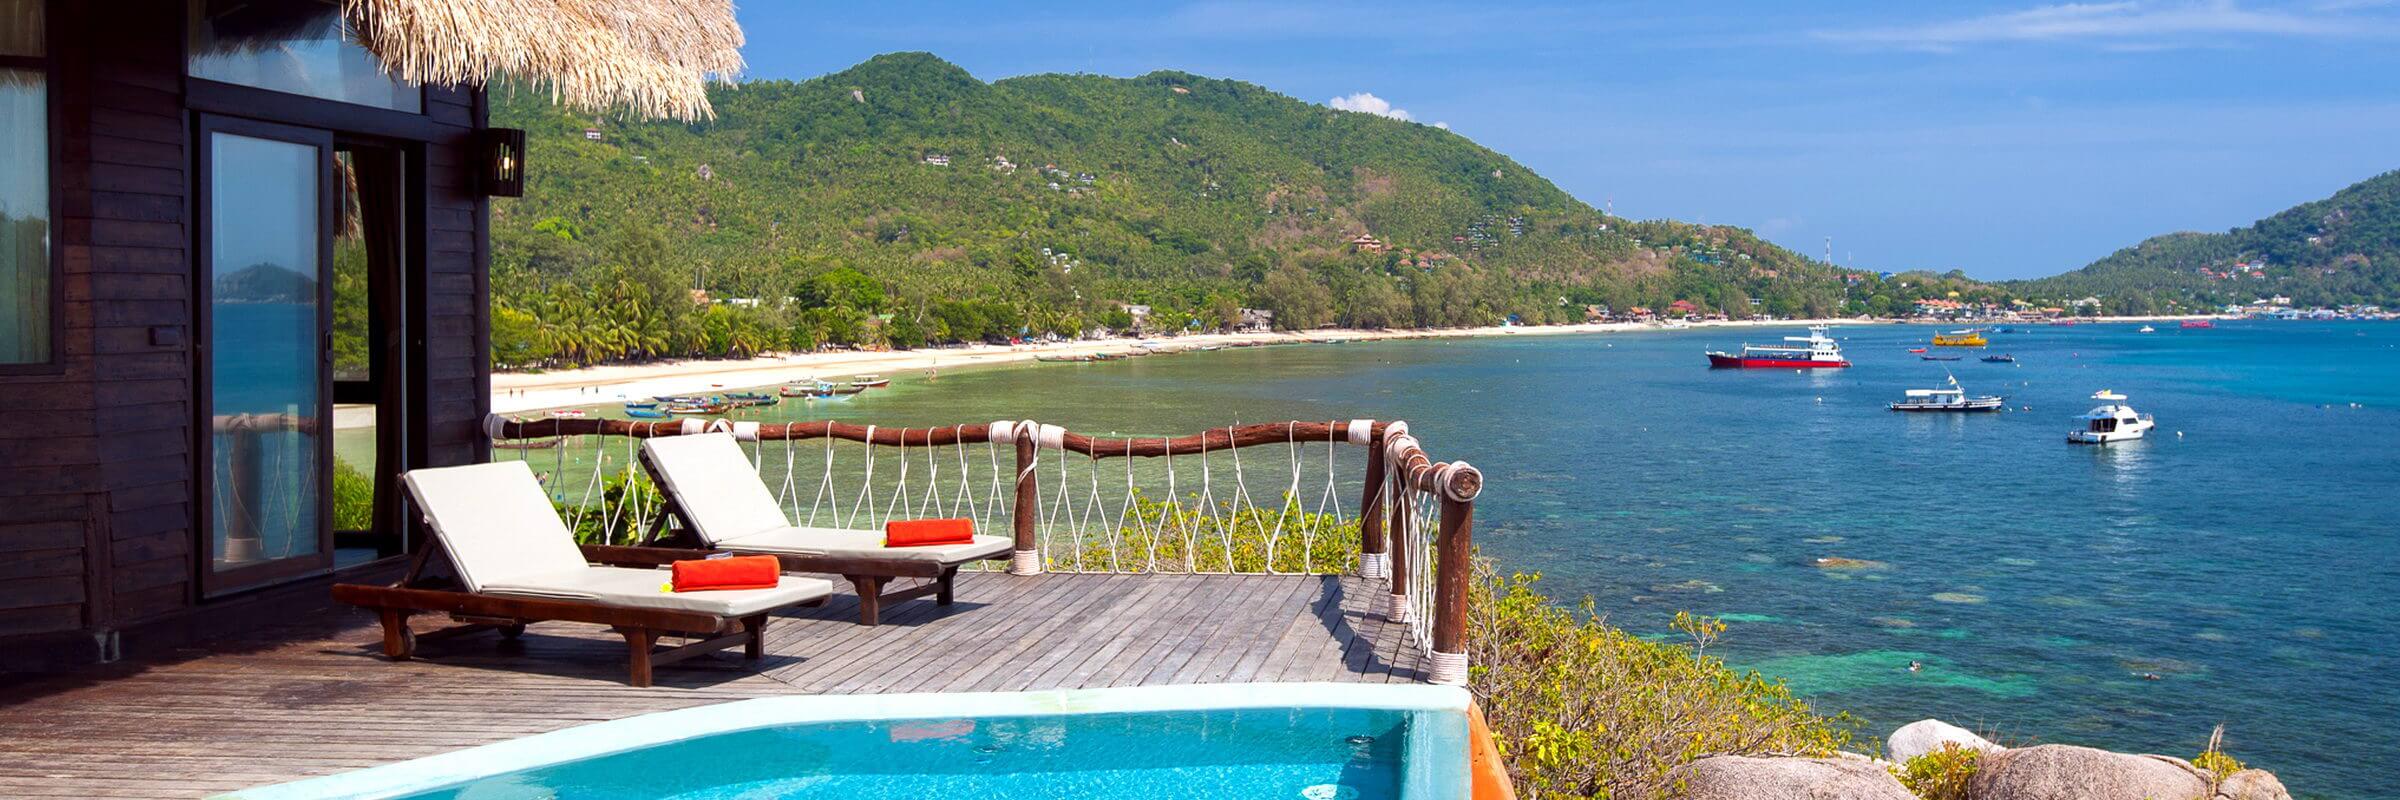 Pool und Terrasse der Villen im Koh Tao Cabana Boutique Resort mit einmaligem Ausblick